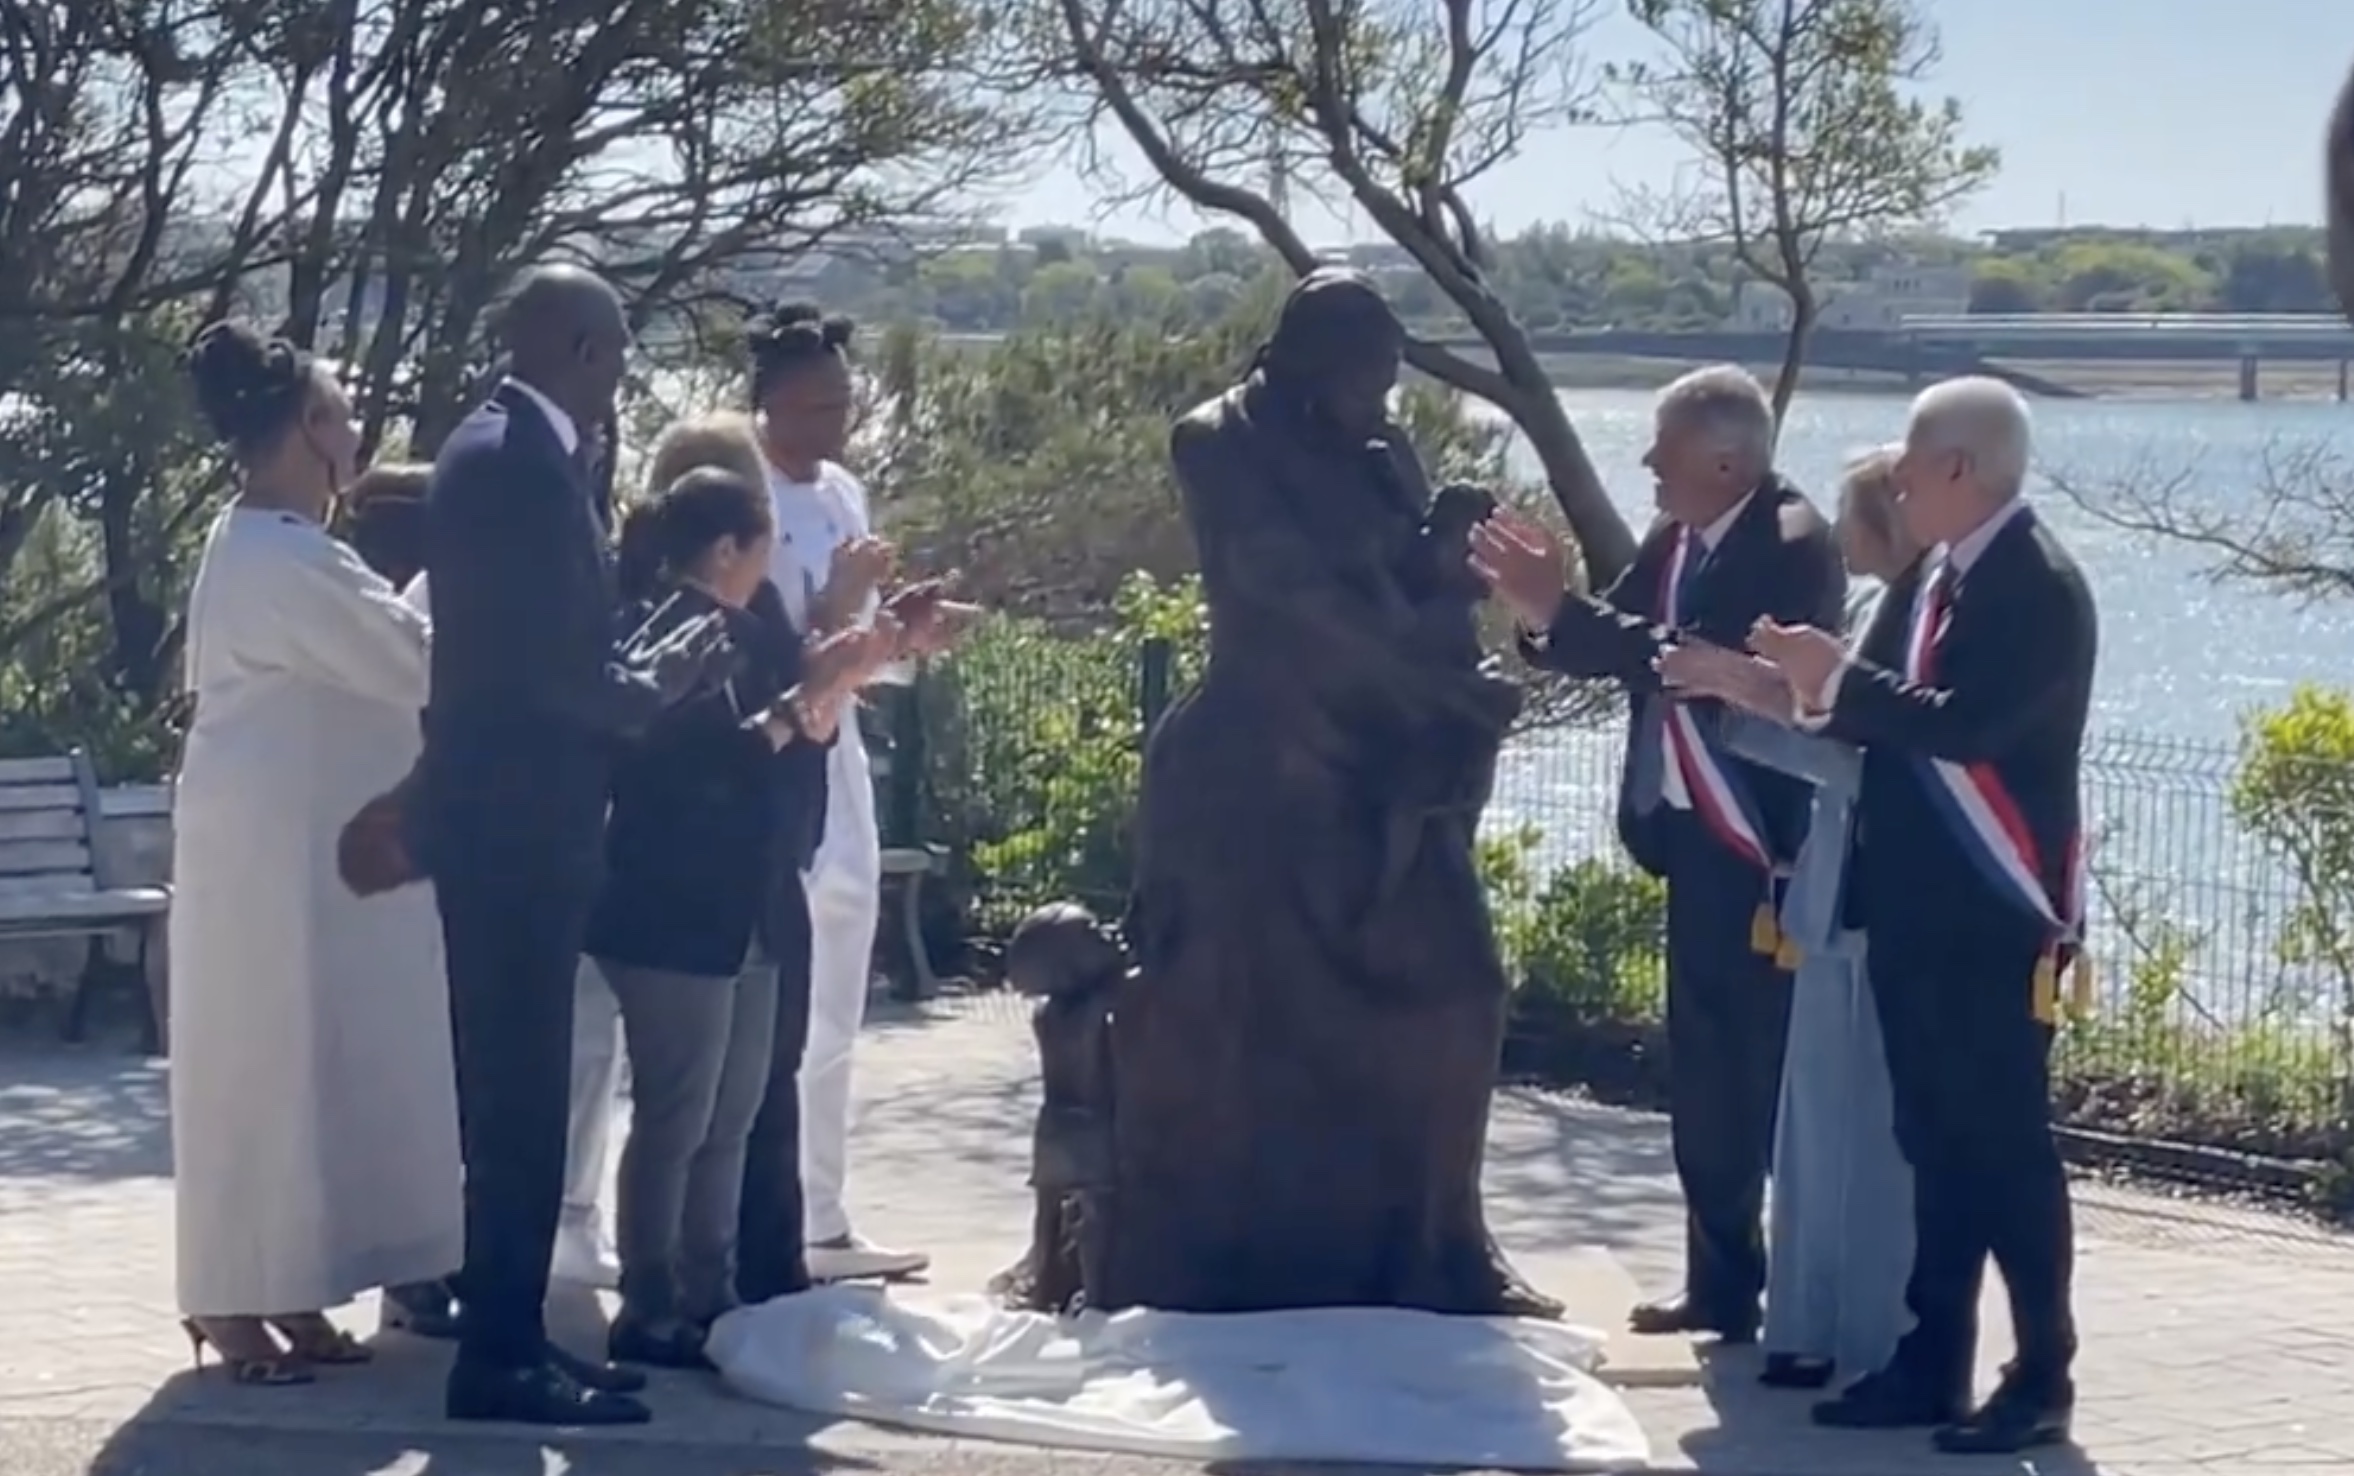     Commémoration de l’abolition de l'esclavage : une statue de l’esclave « Clarisse » inaugurée à La Rochelle 

